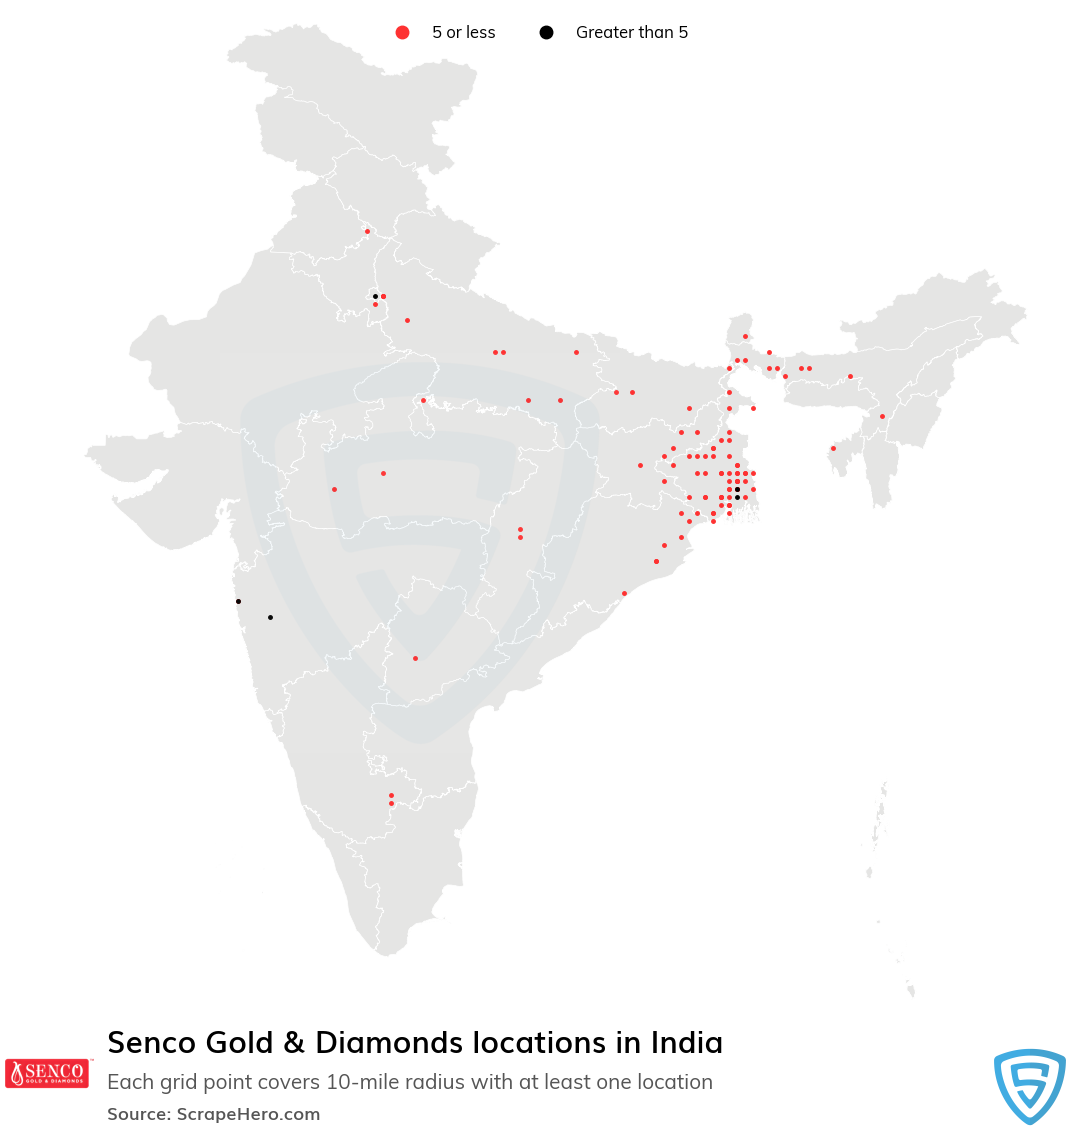 Senco Gold & Diamonds store locations